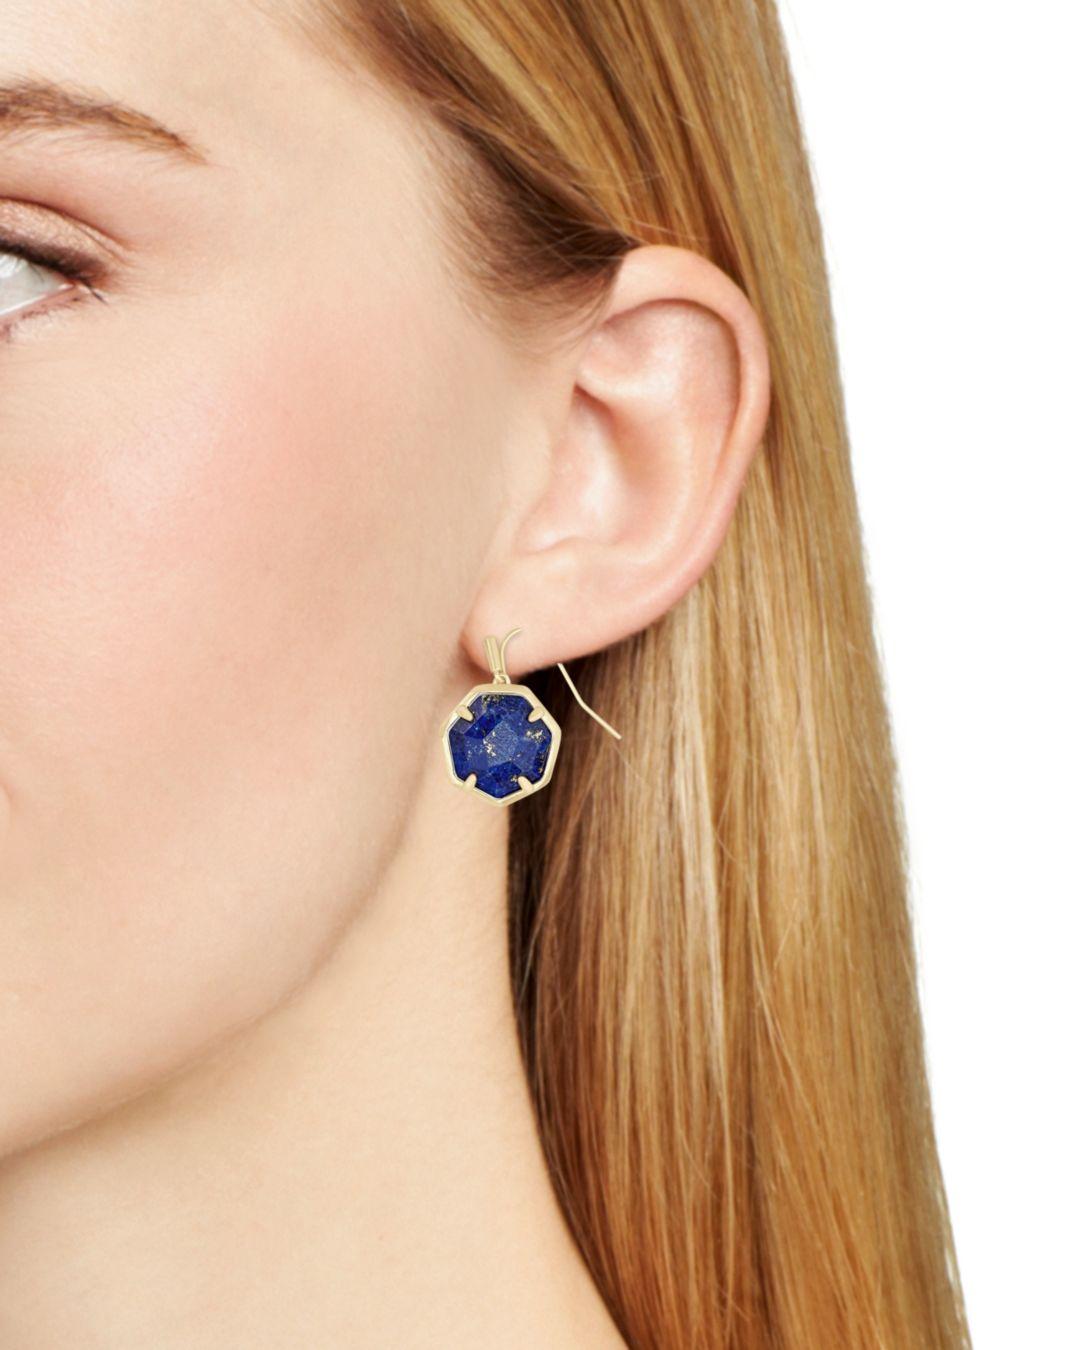 Featured image of post Kendra Scott Cynthia Earrings : Kendra scott sophee crystal drop earrings $78.00.